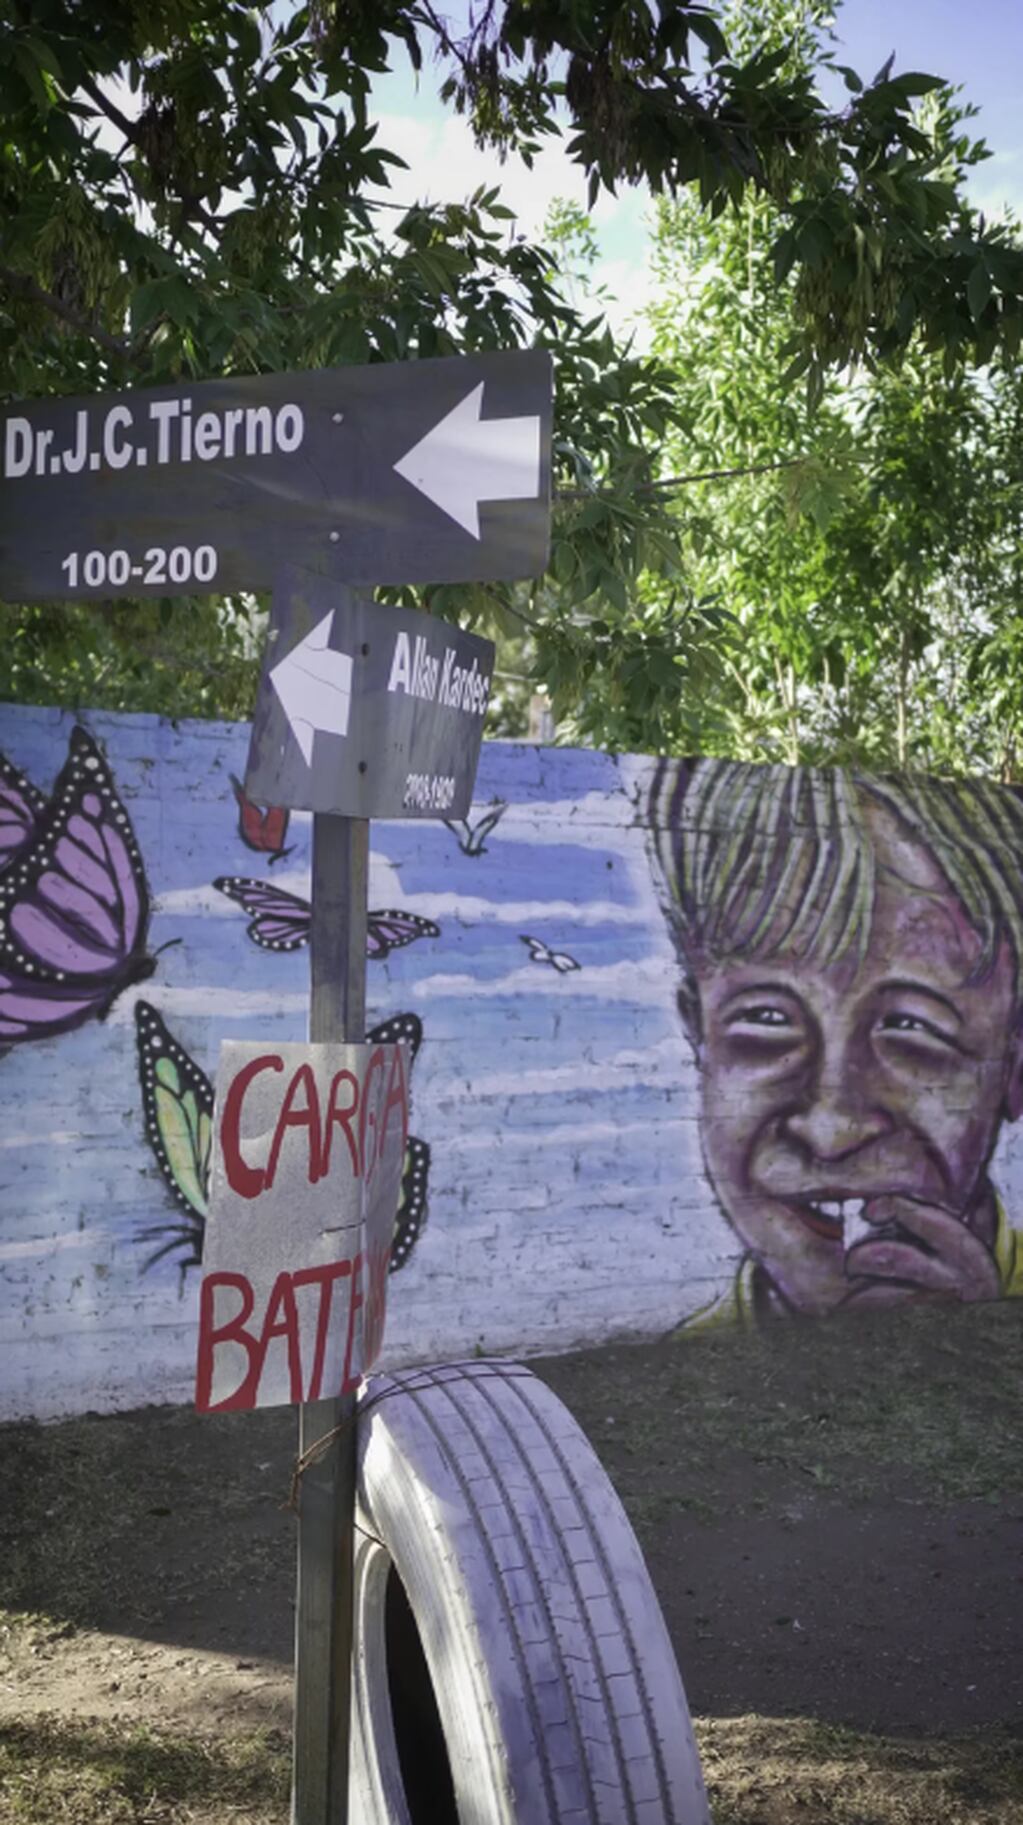 El mural se encuentra a tres cuadras de donde vivía el nene. Foto: Juan Pablo Chaves/TN